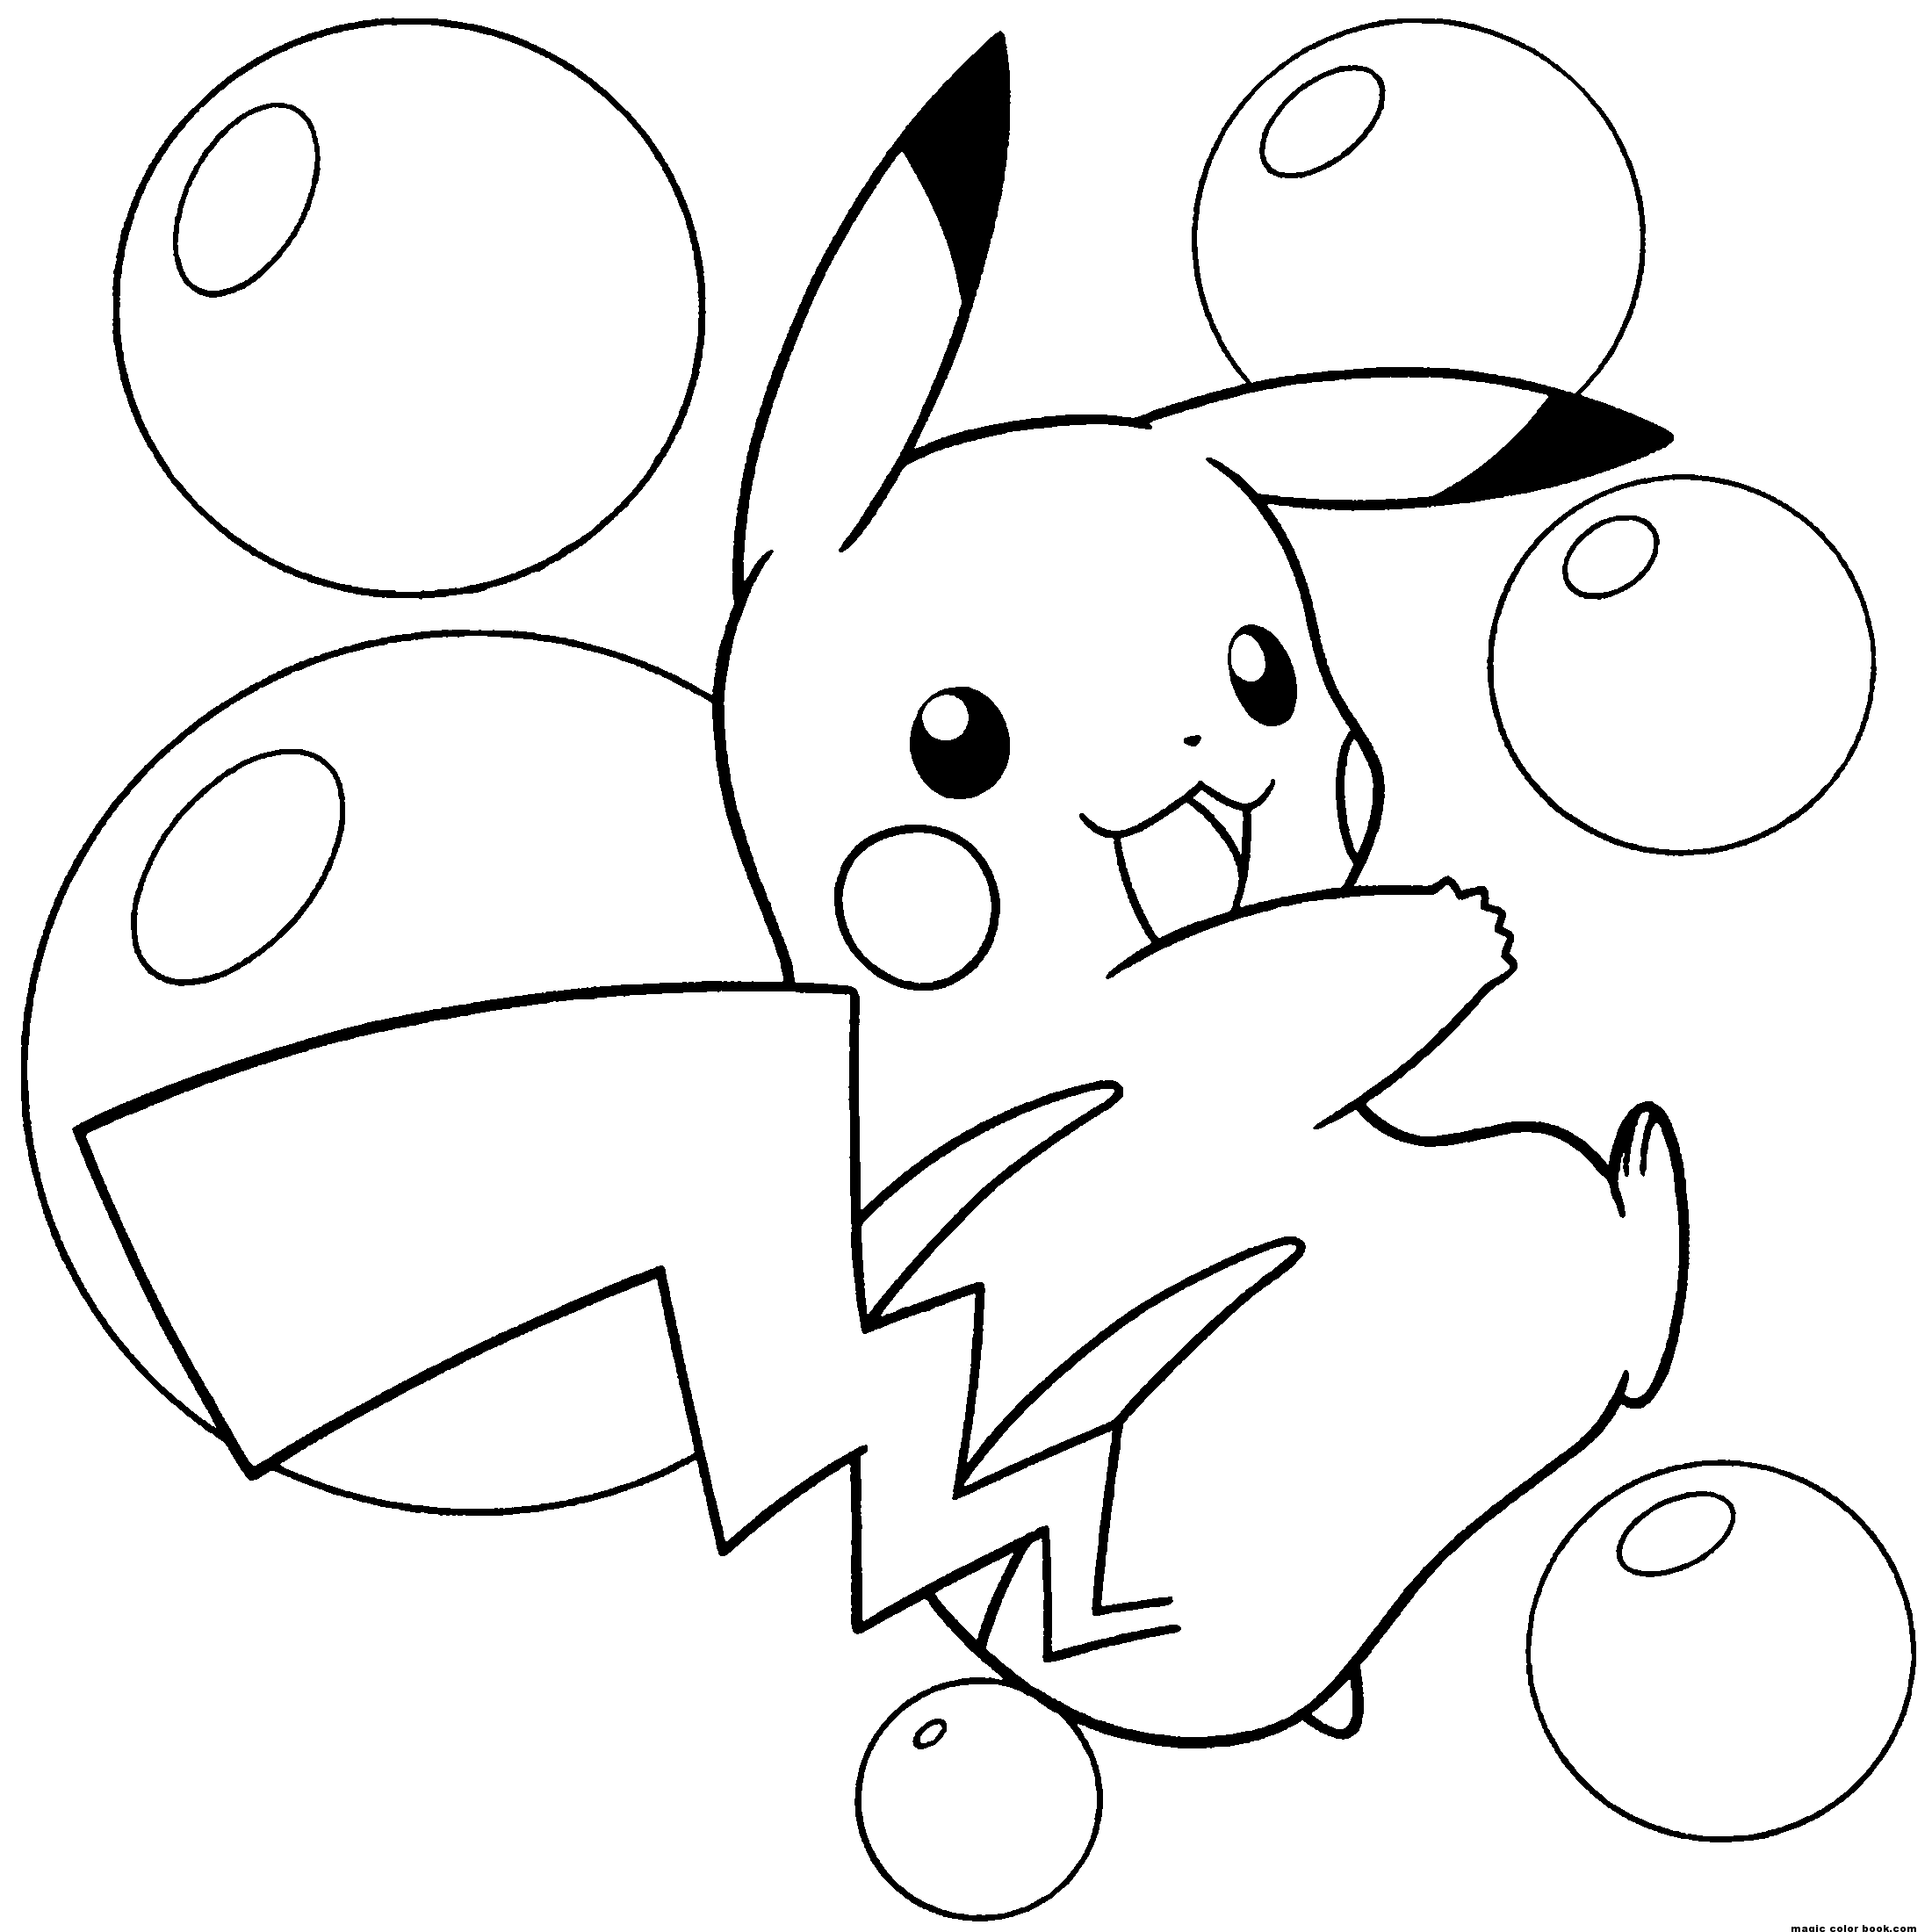 Dibujos para colorear gratis de Pokémon para imprimir y colorear, para niños